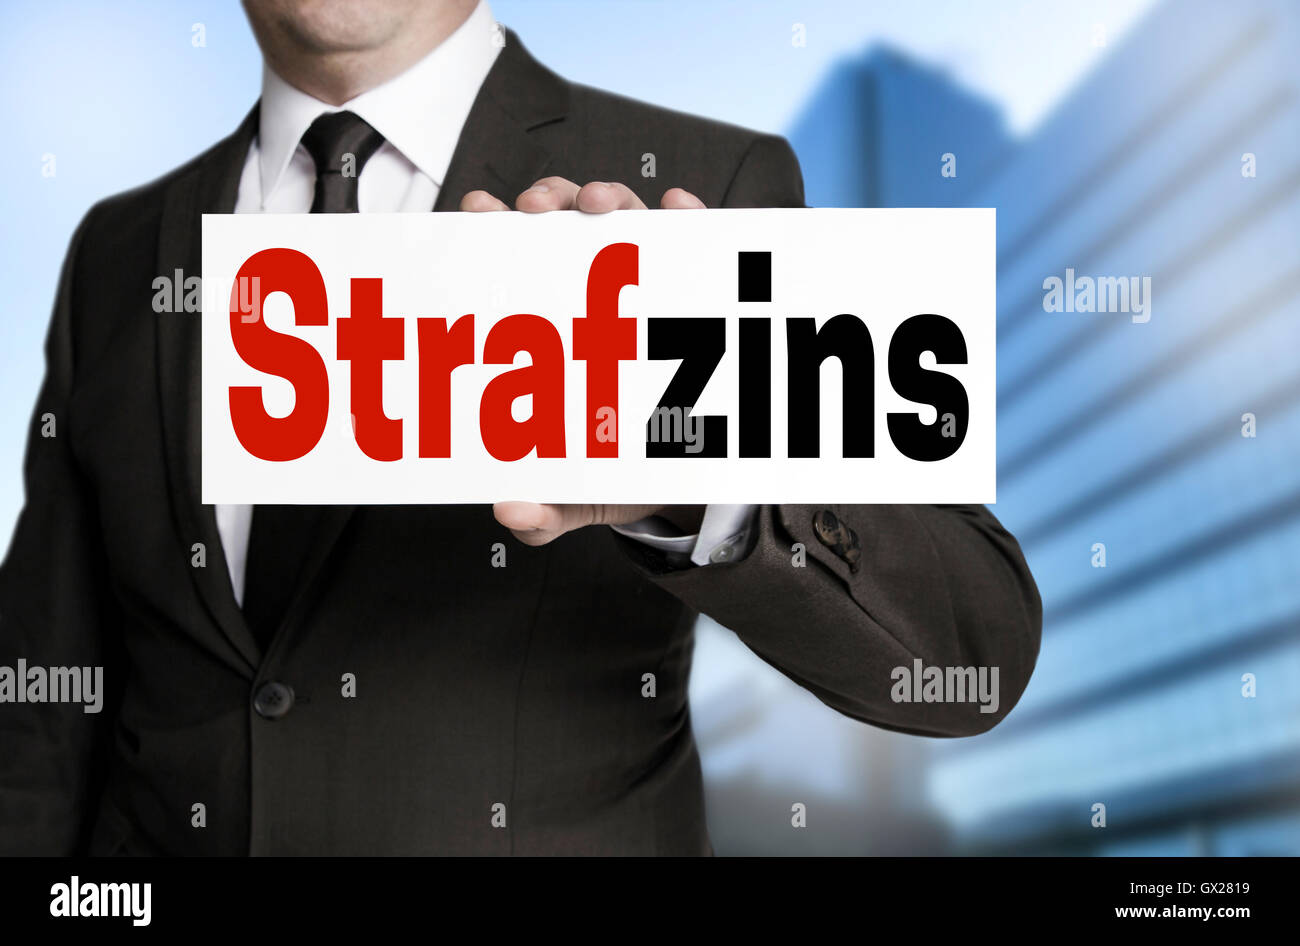 Strafzins (im deutschen Negativzins) Zeichen vom Geschäftsmann gehalten wird. Stockfoto